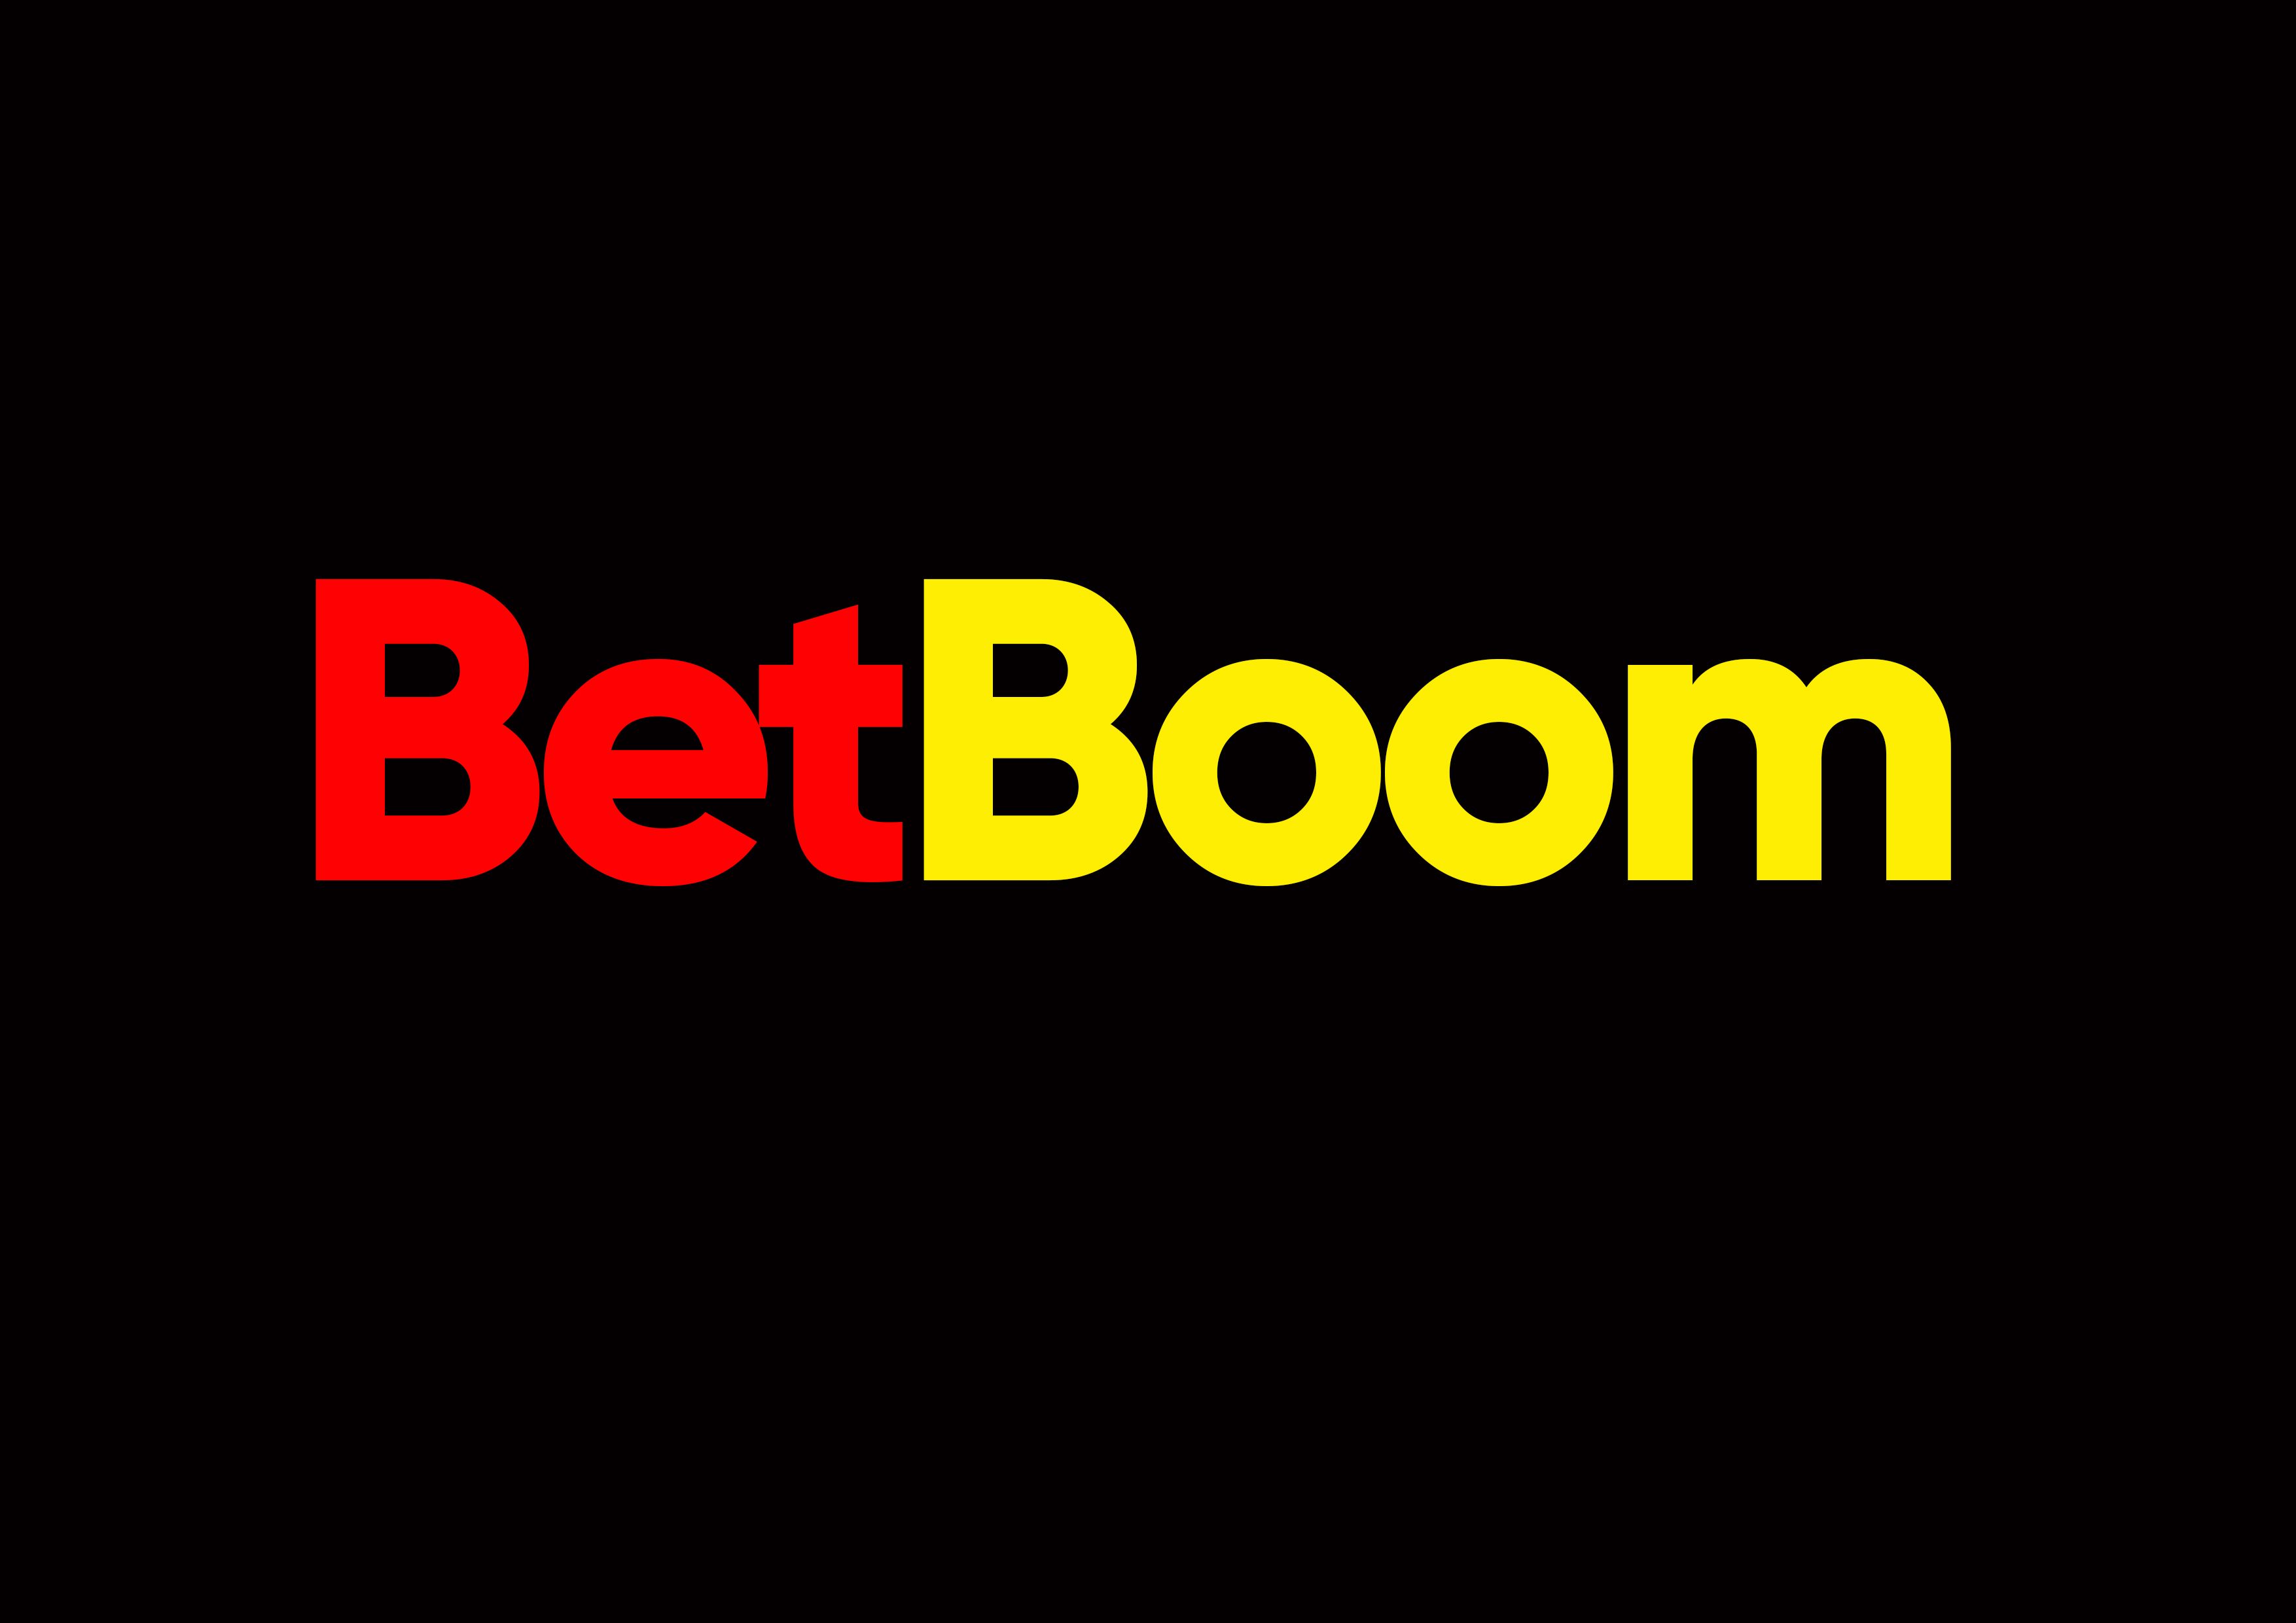 Клиент BetBoom выиграл более 100 тысяч рублей, поставив на экспресс с коэффициентом 2002